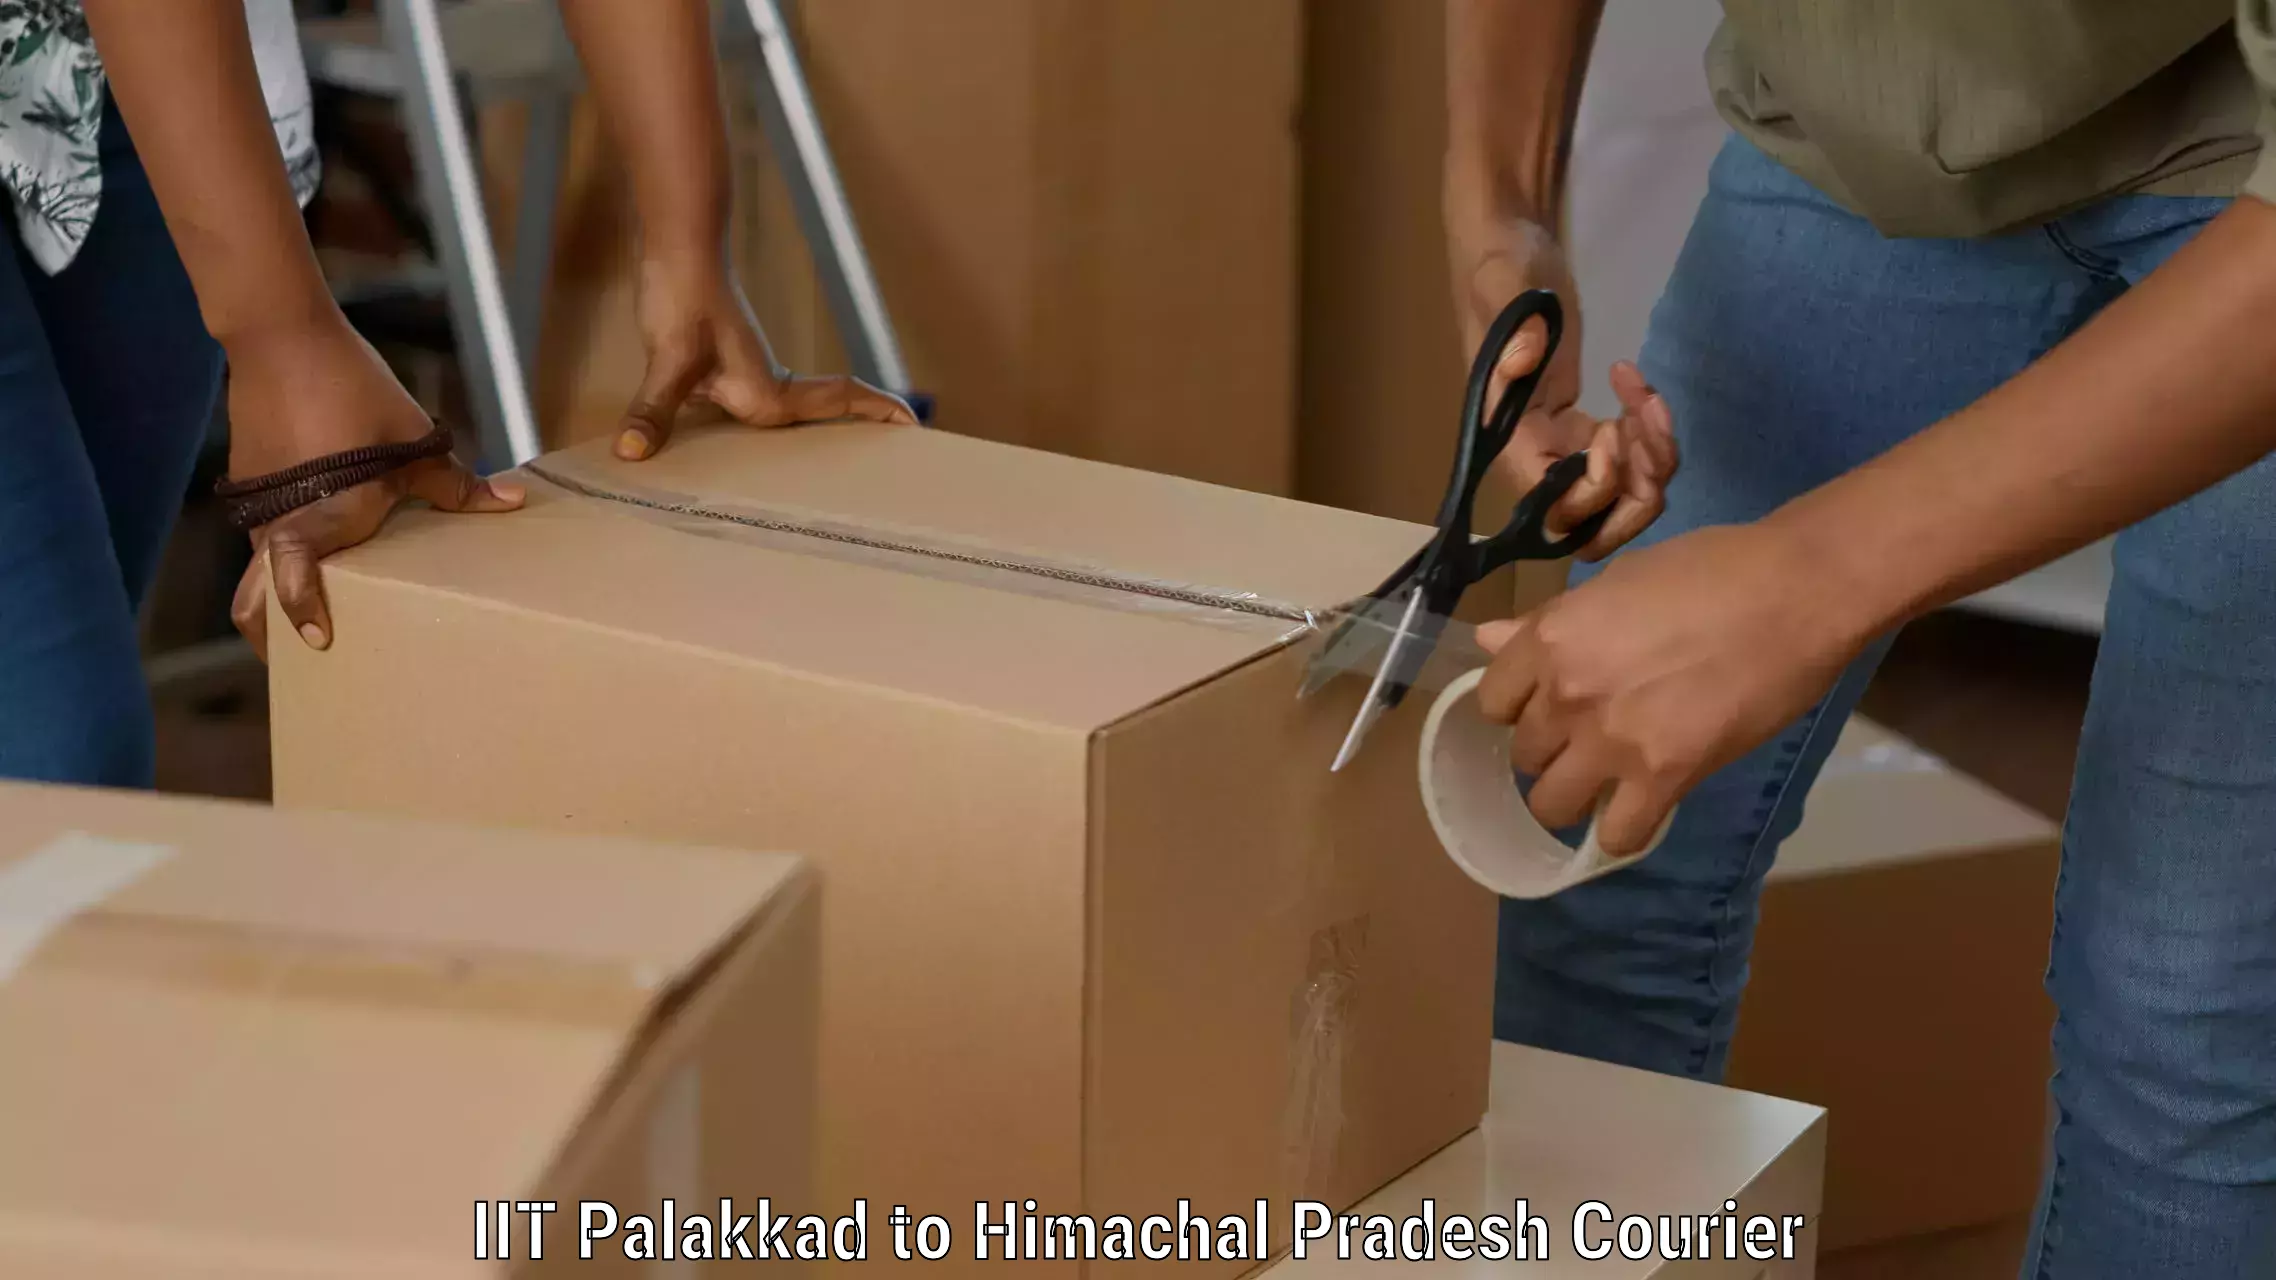 Secure packaging IIT Palakkad to Una Himachal Pradesh